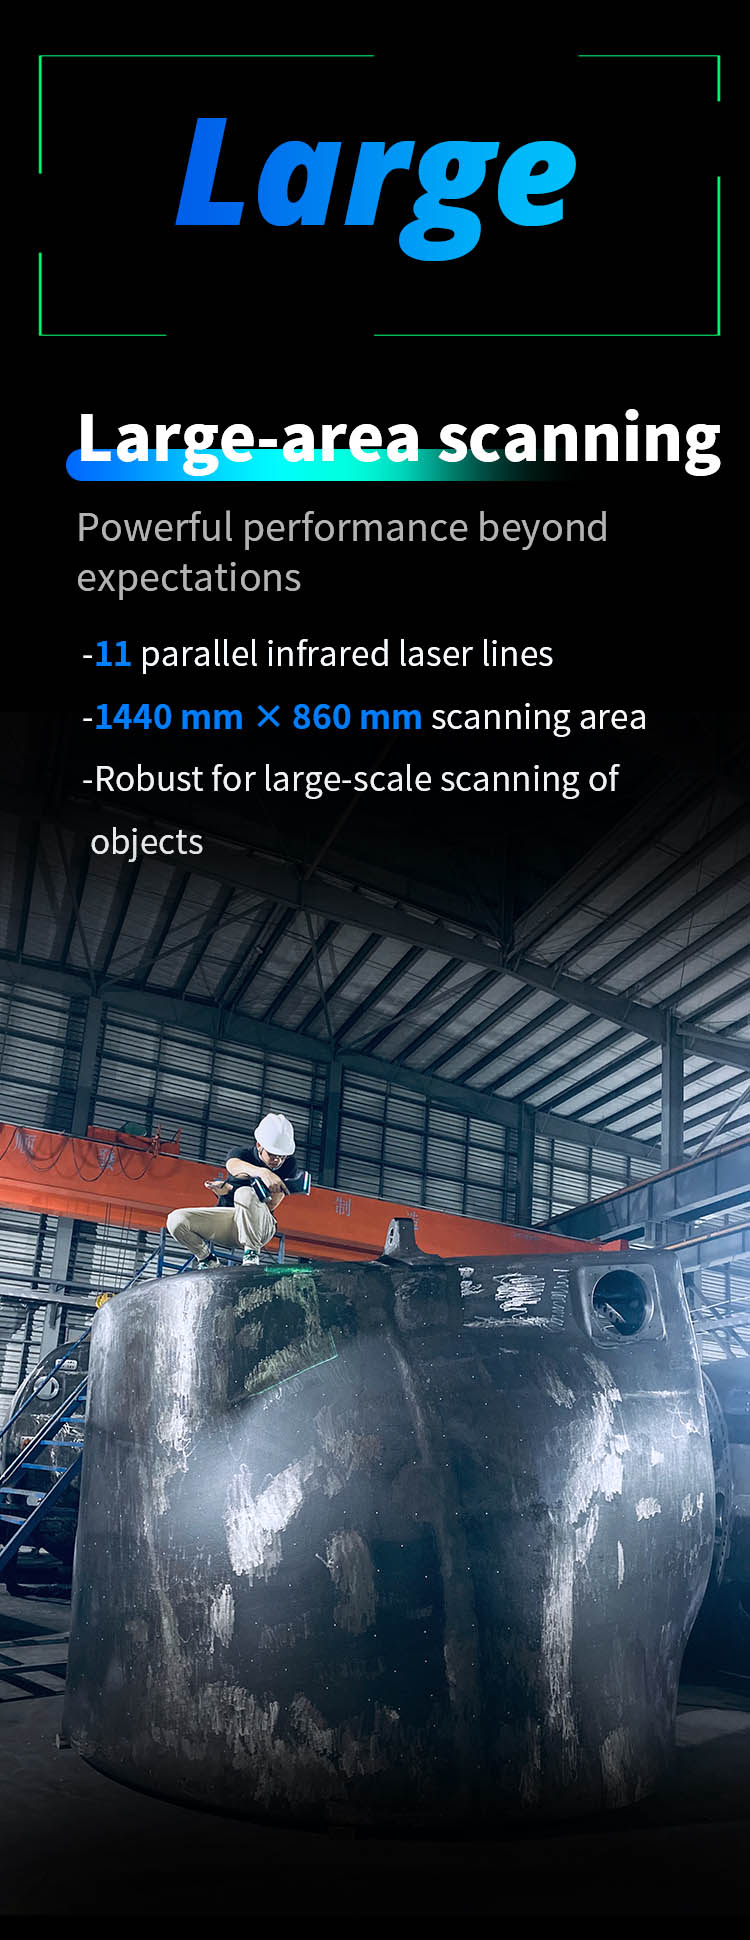 Large-area scanning